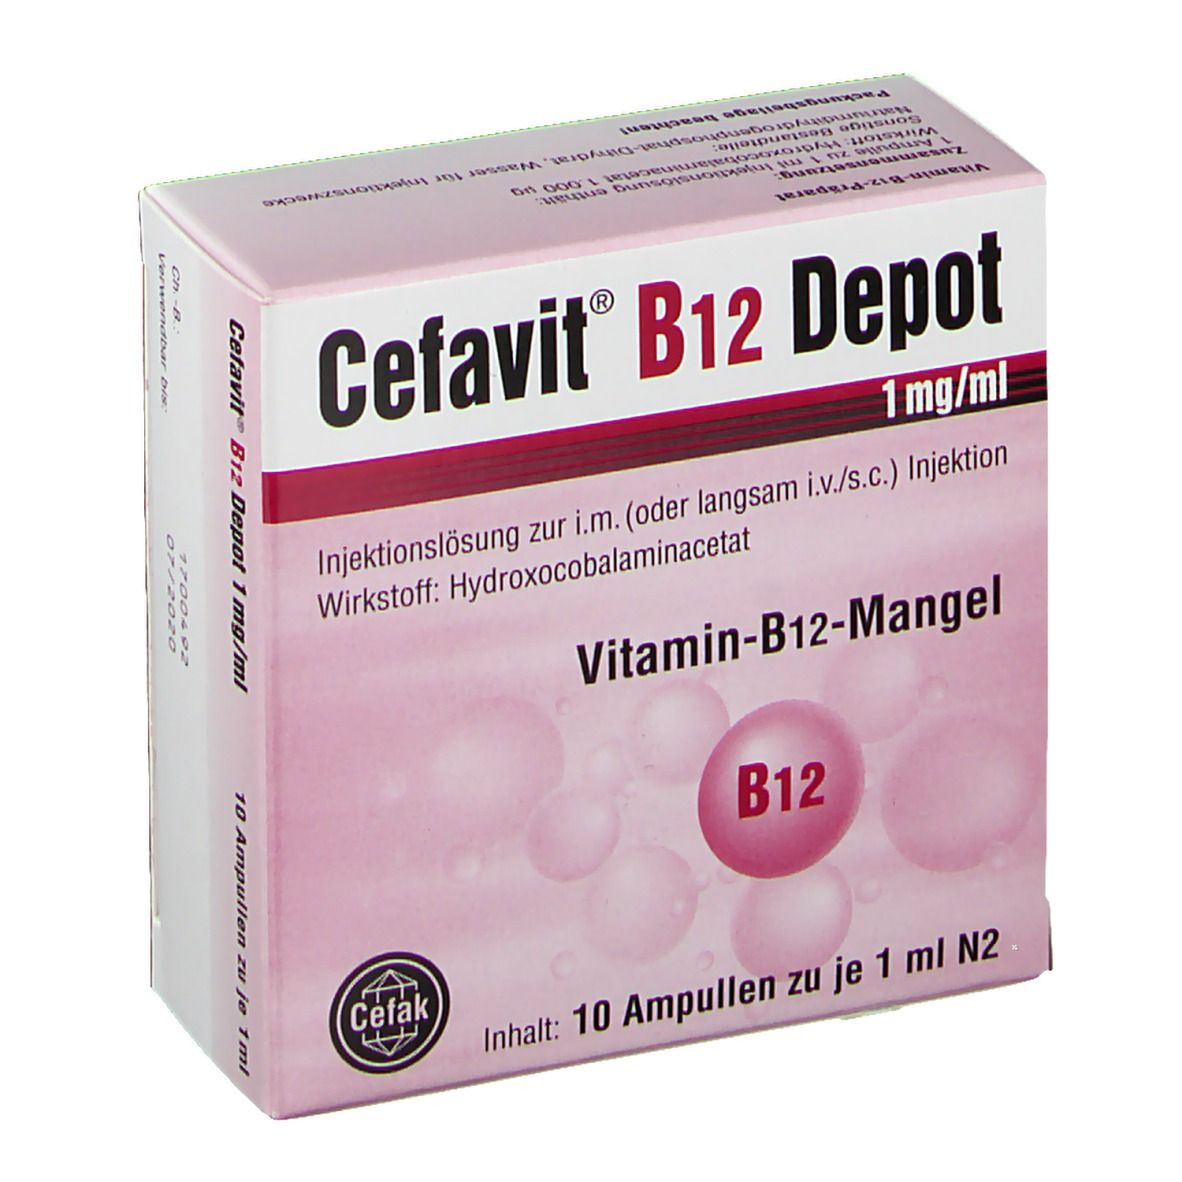 Cefavit® B12 Depot 1 mg/ml